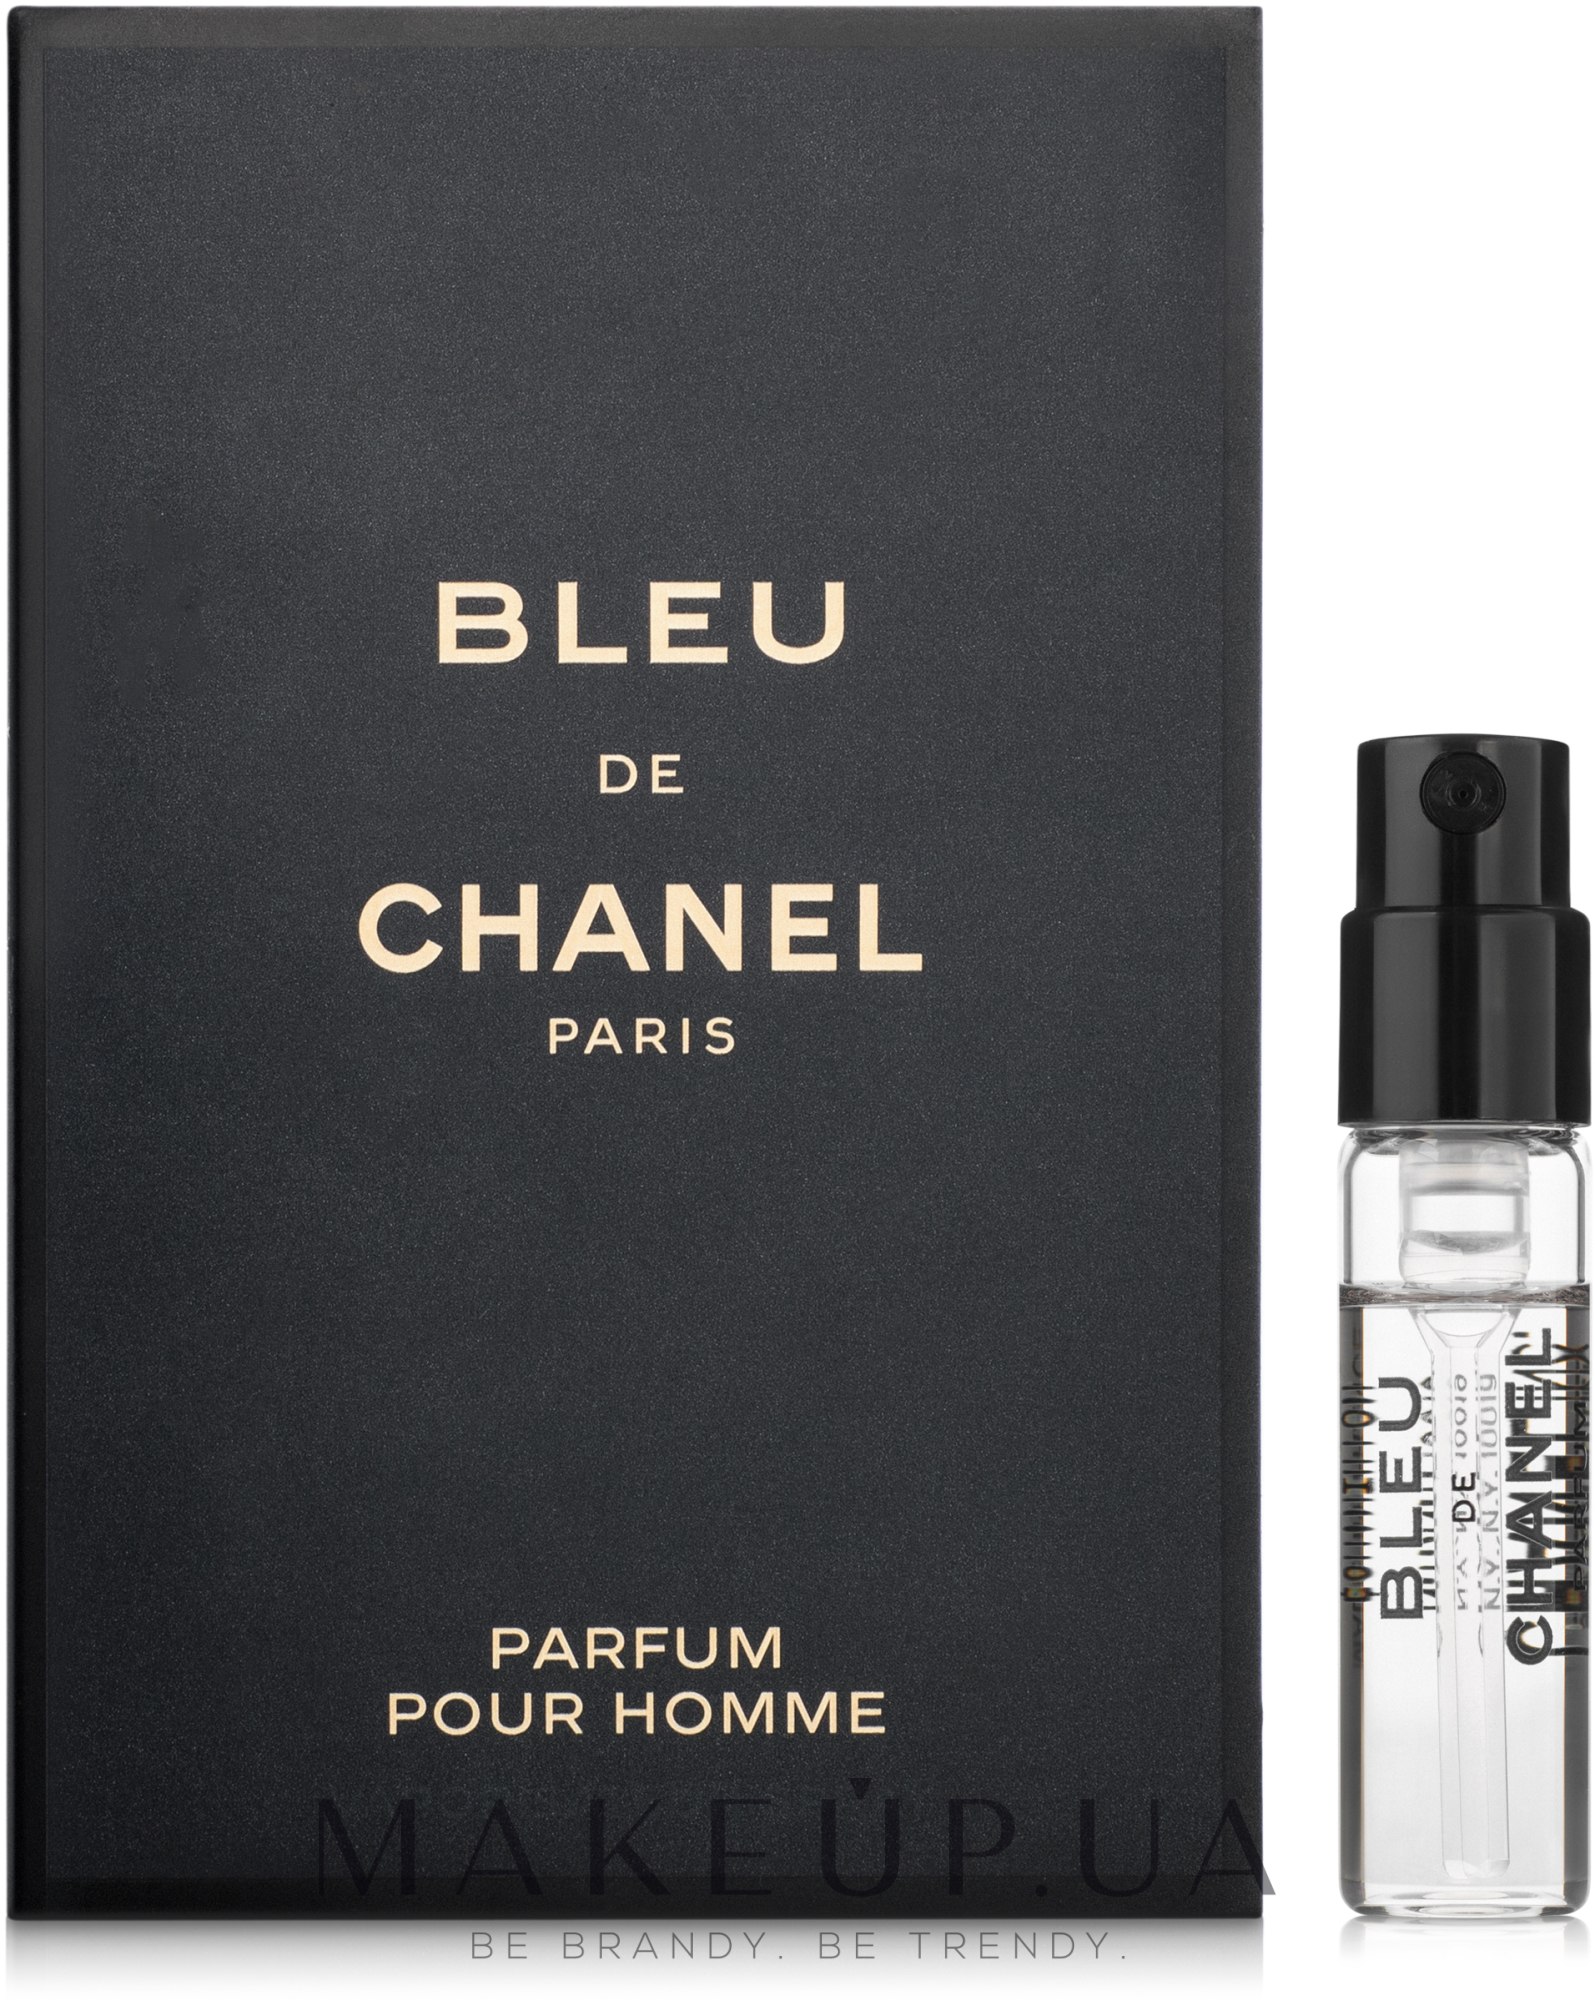 Духиэкстракт Bleu de Chanel Eau de Parfum Chanel Poure Homme мужские 100  мл  купить по выгодной цене  AliExpress